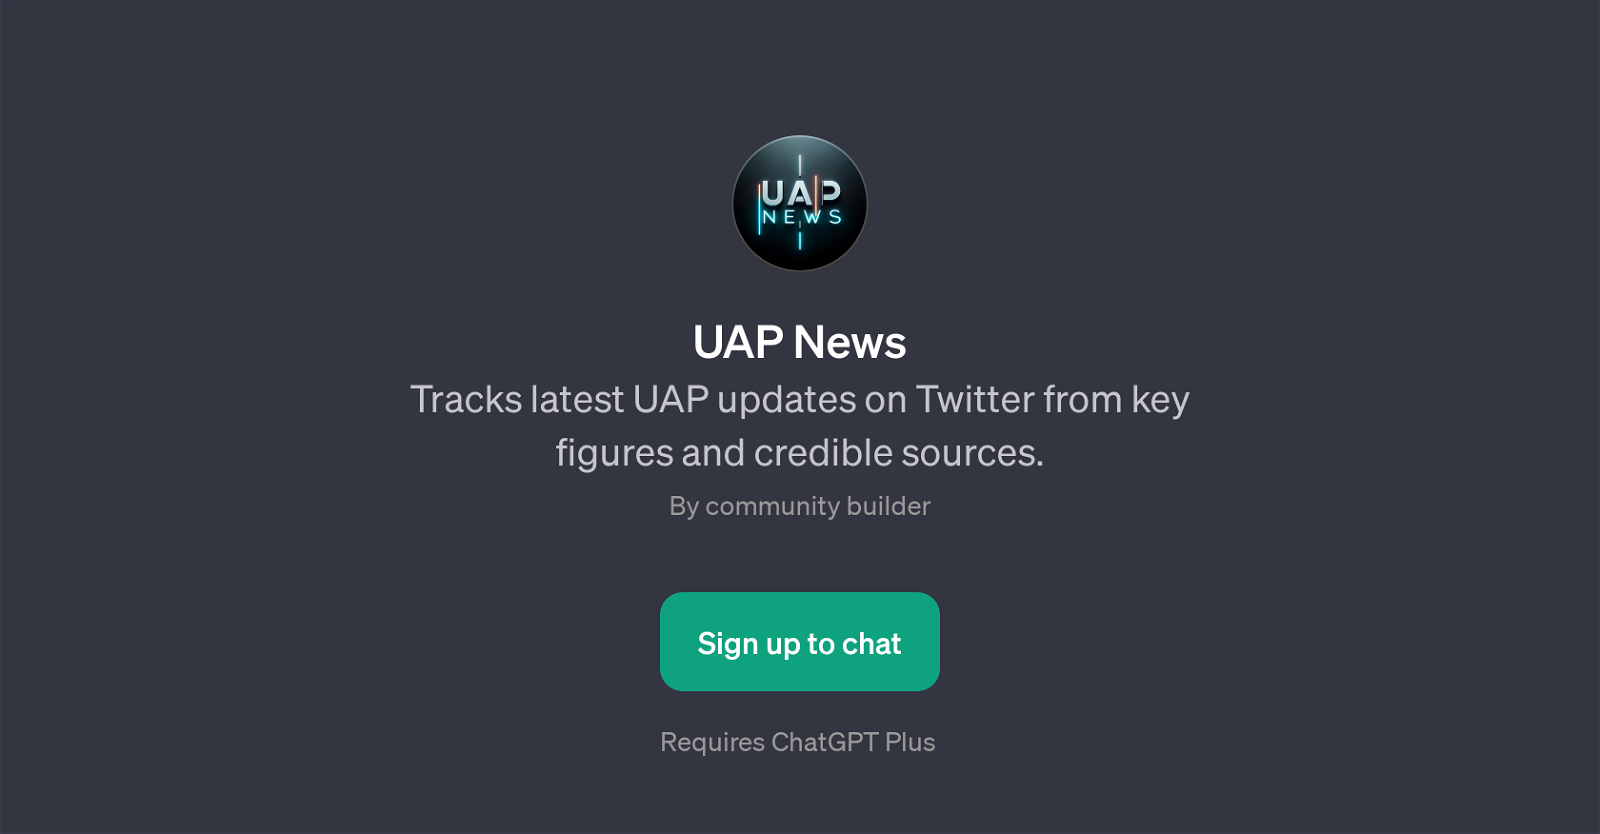 UAP News website